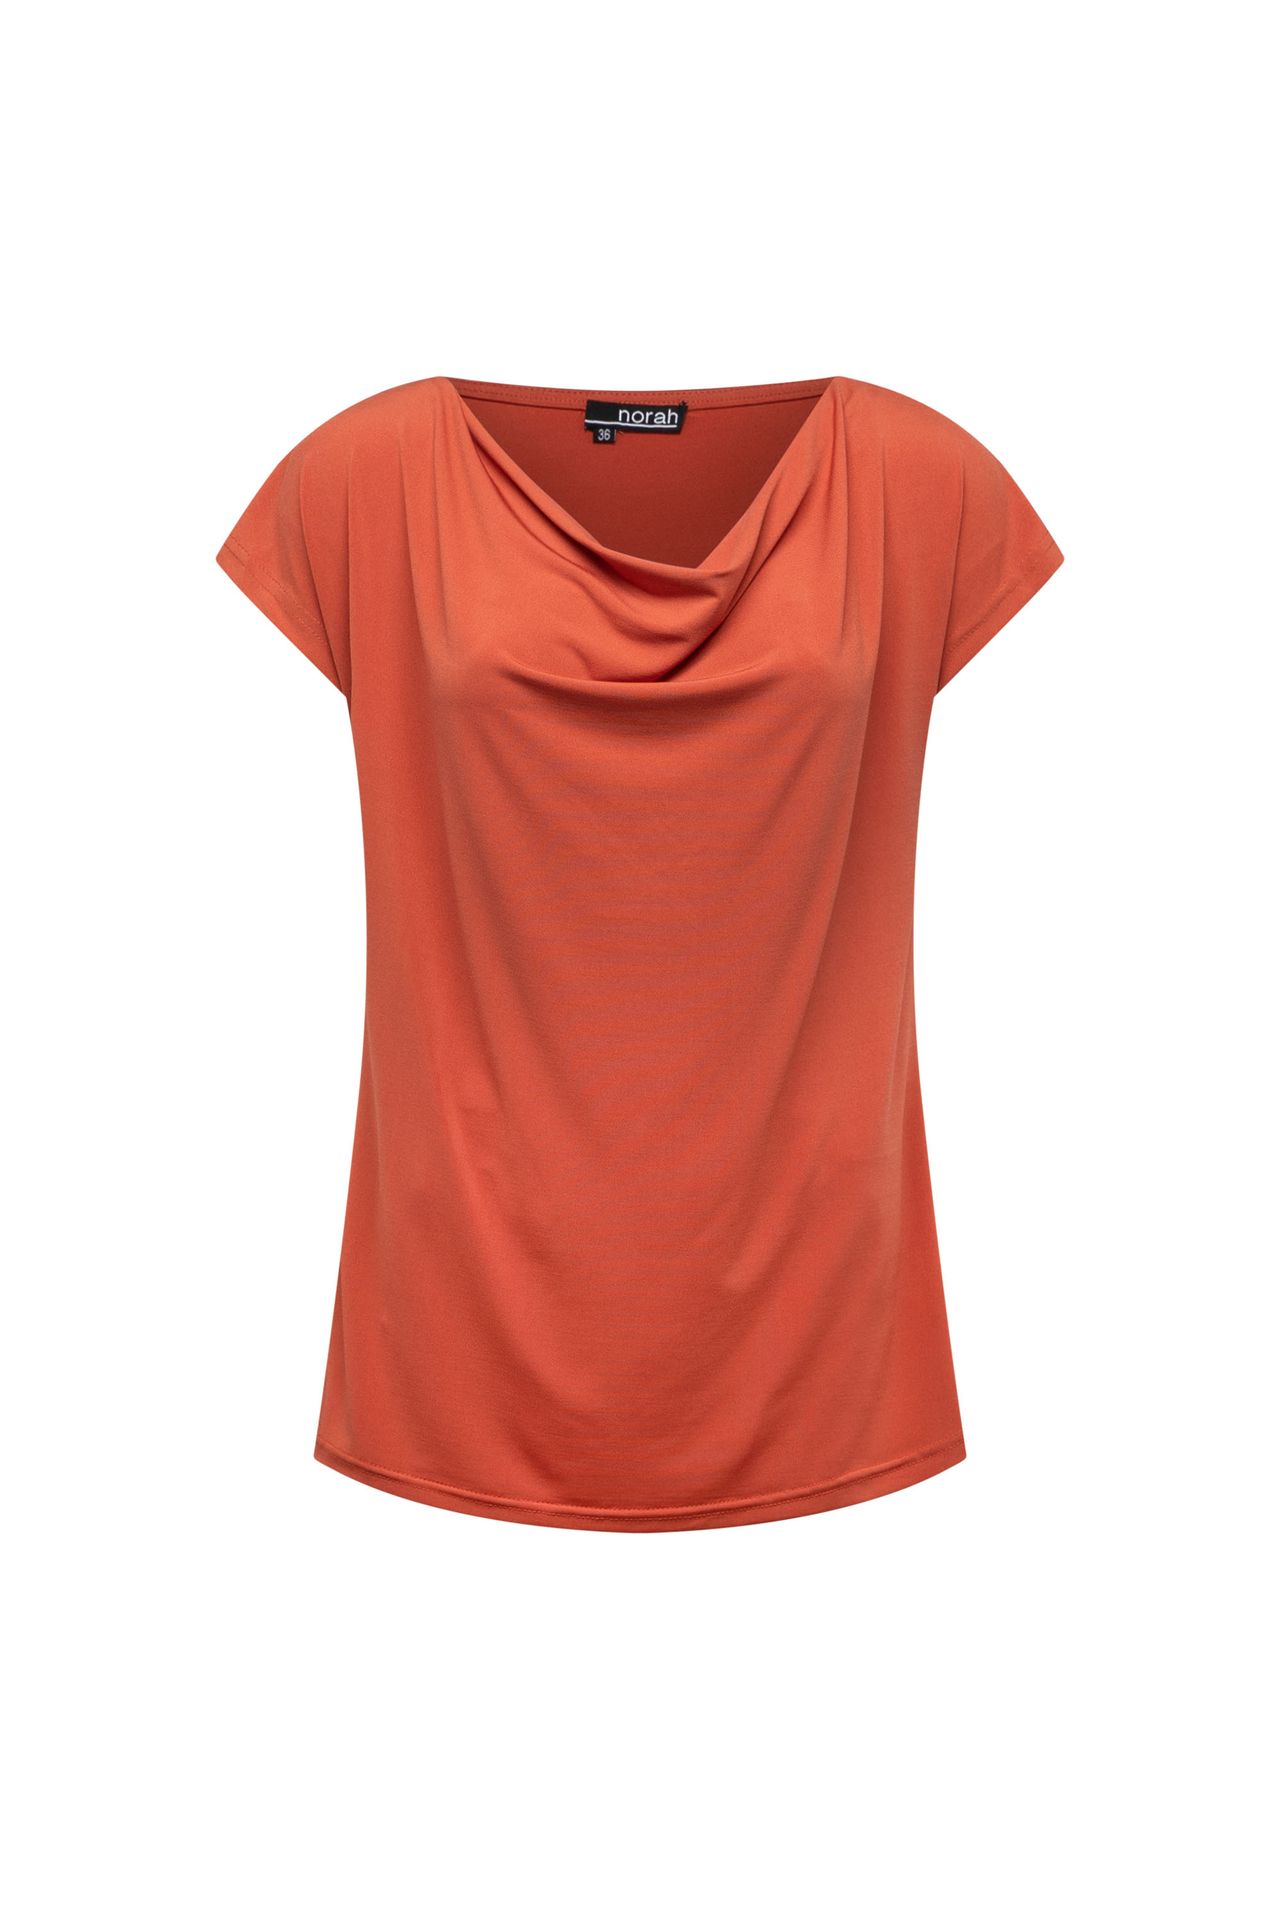 Norah Terracotta shirt met gedrapeerde hals terra 209994-660